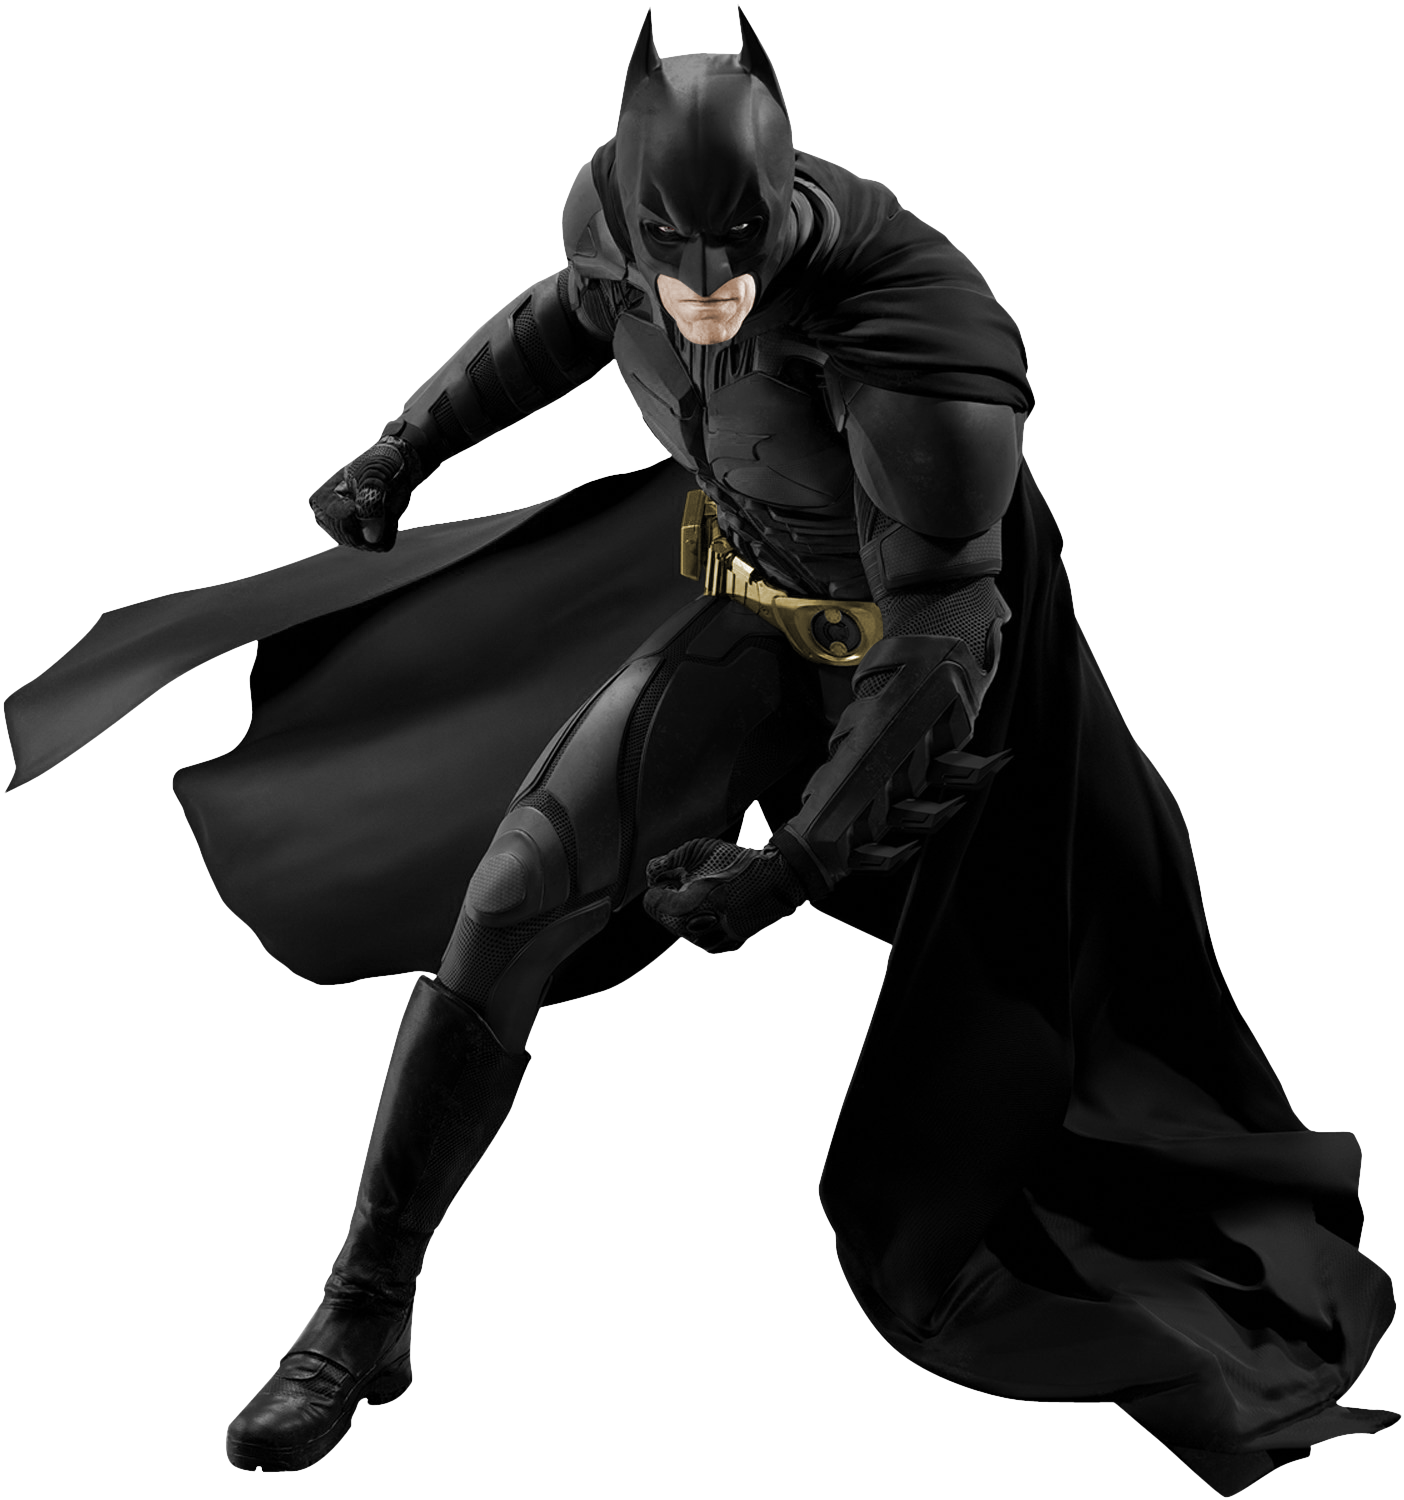 Imagen Dark Knight Batman PNG de alta calidad